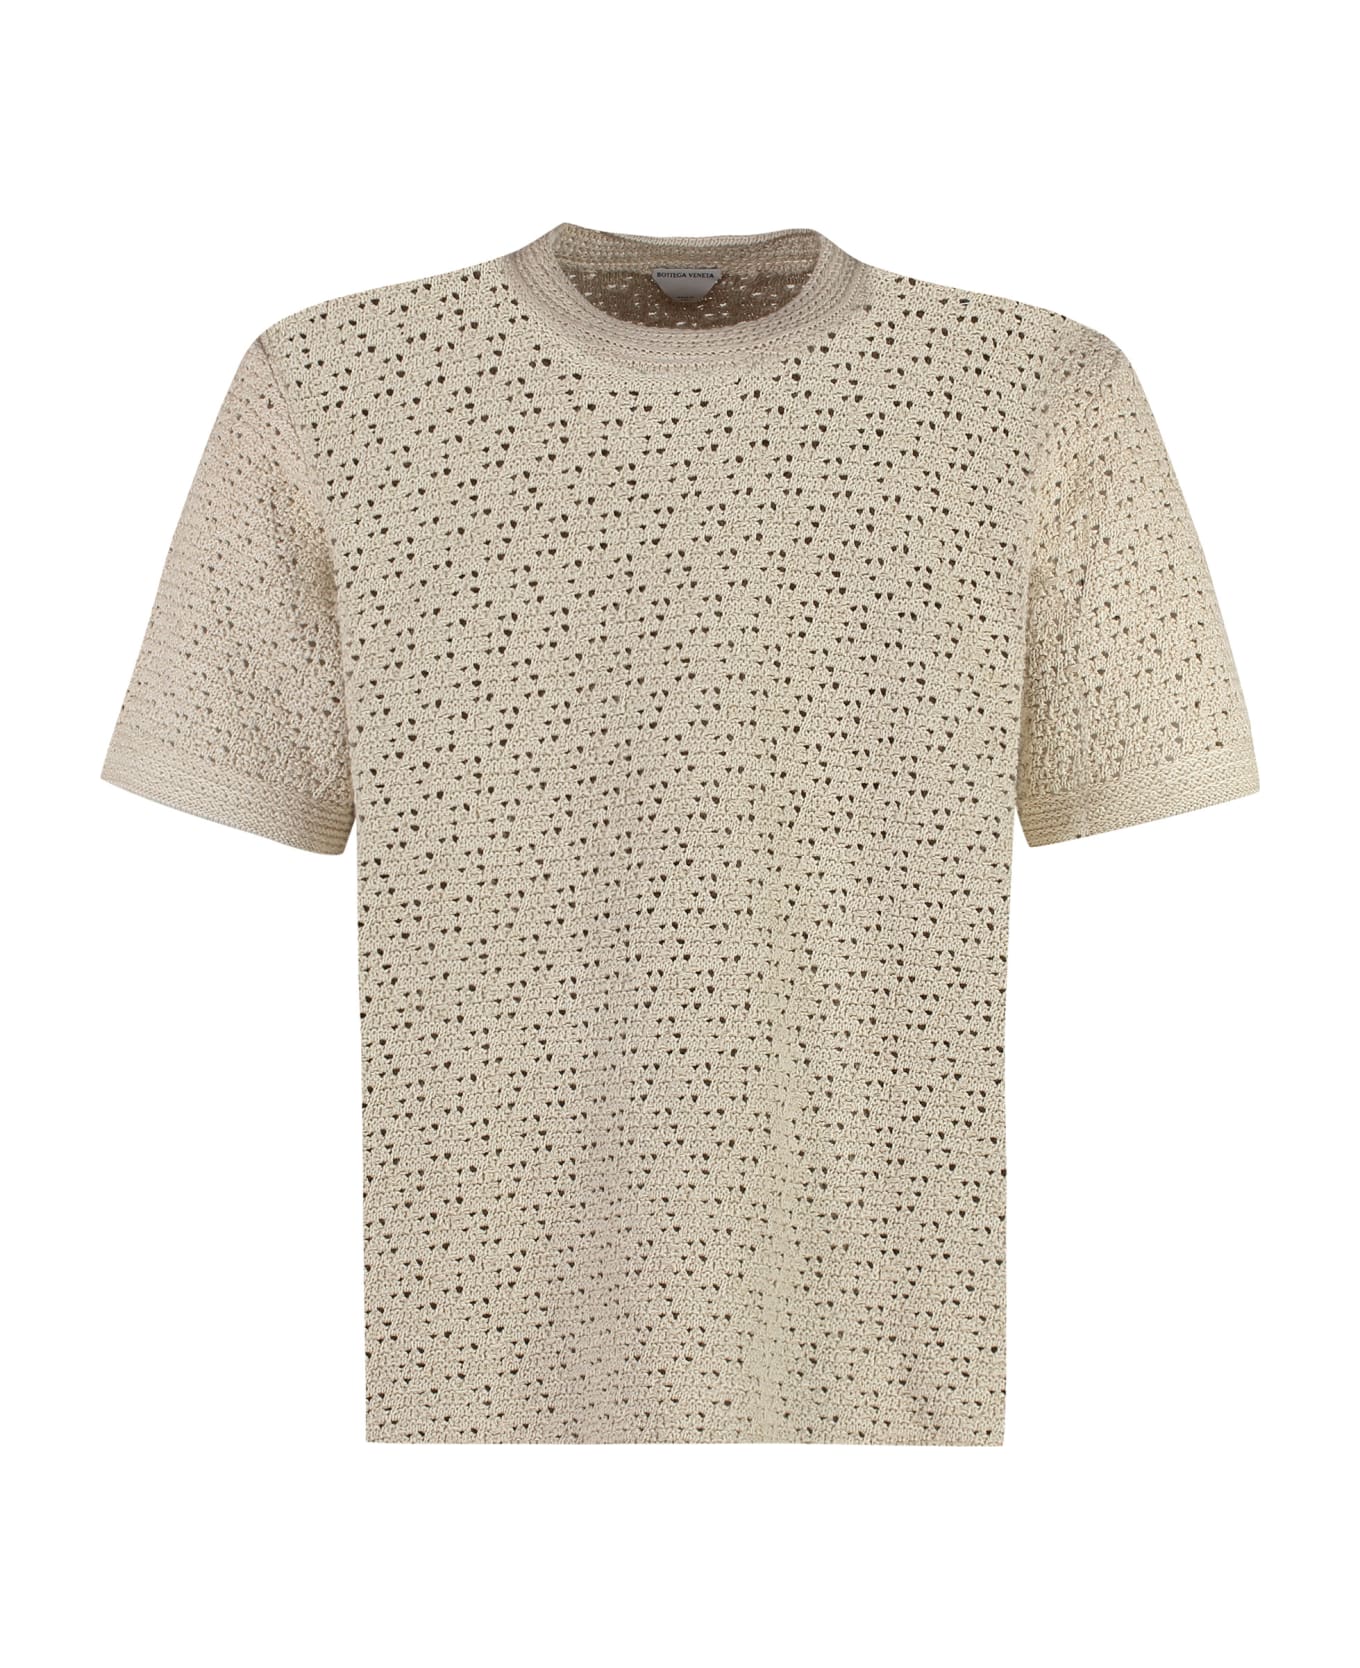 Bottega Veneta Cotton Knit T-shirt - Sand シャツ